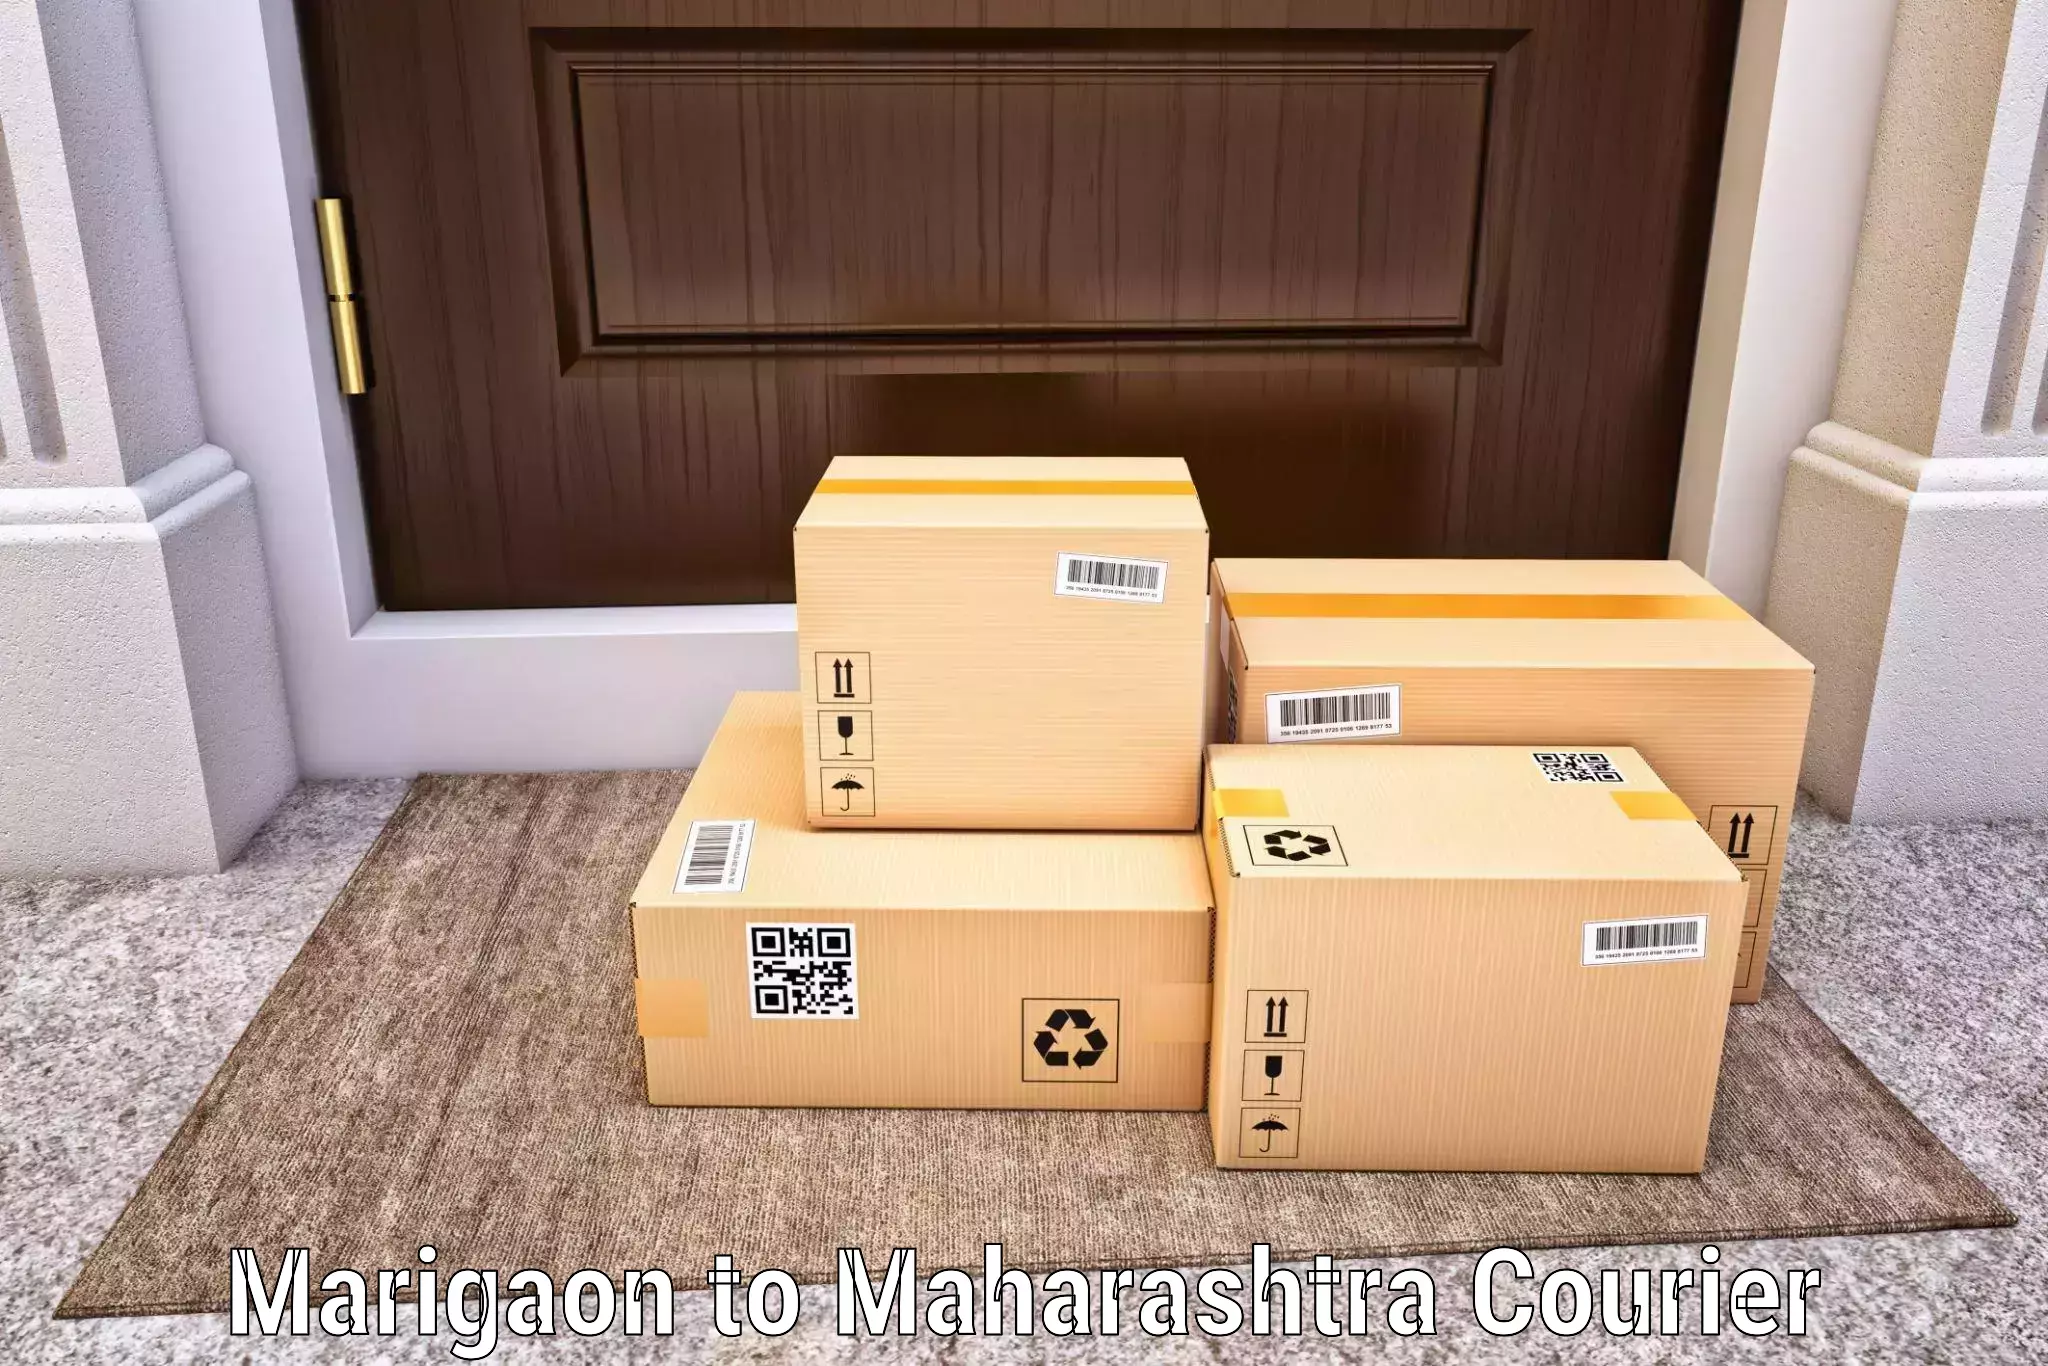 Next-generation courier services Marigaon to Naldurg